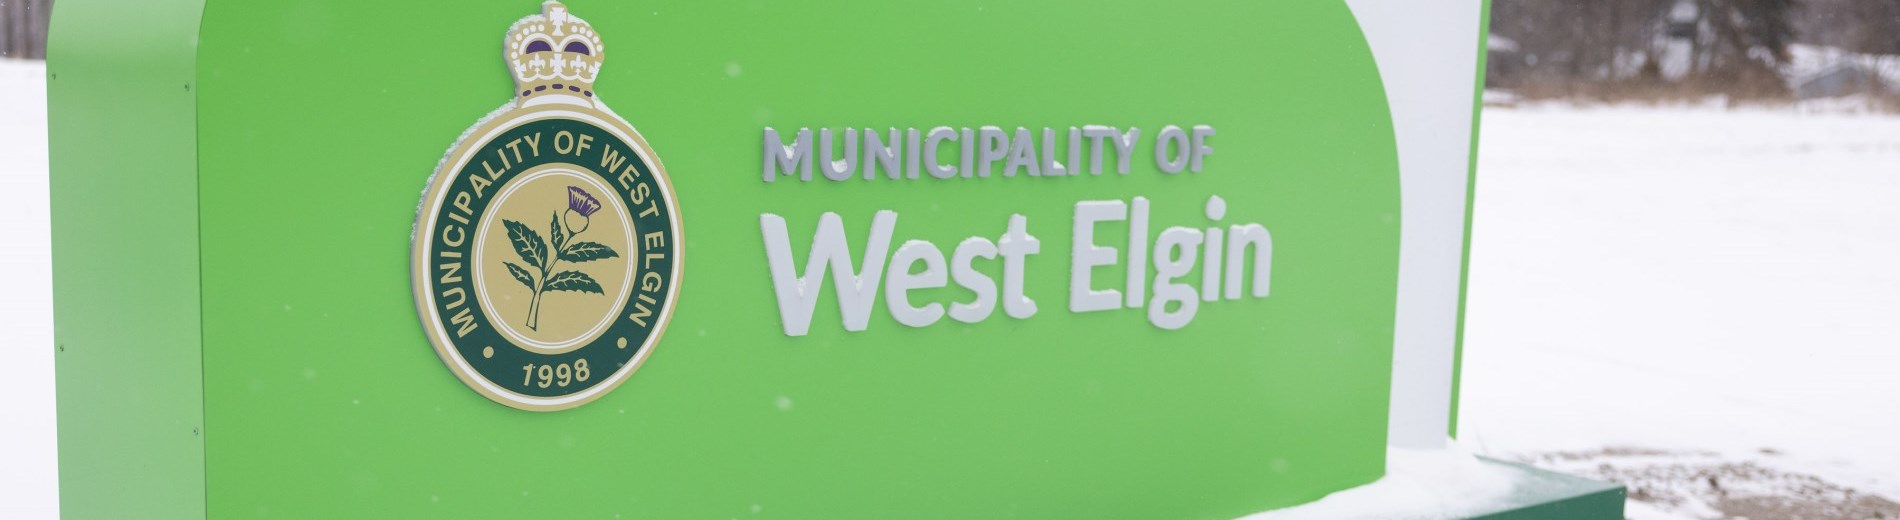 West Elgin Logo on Sign